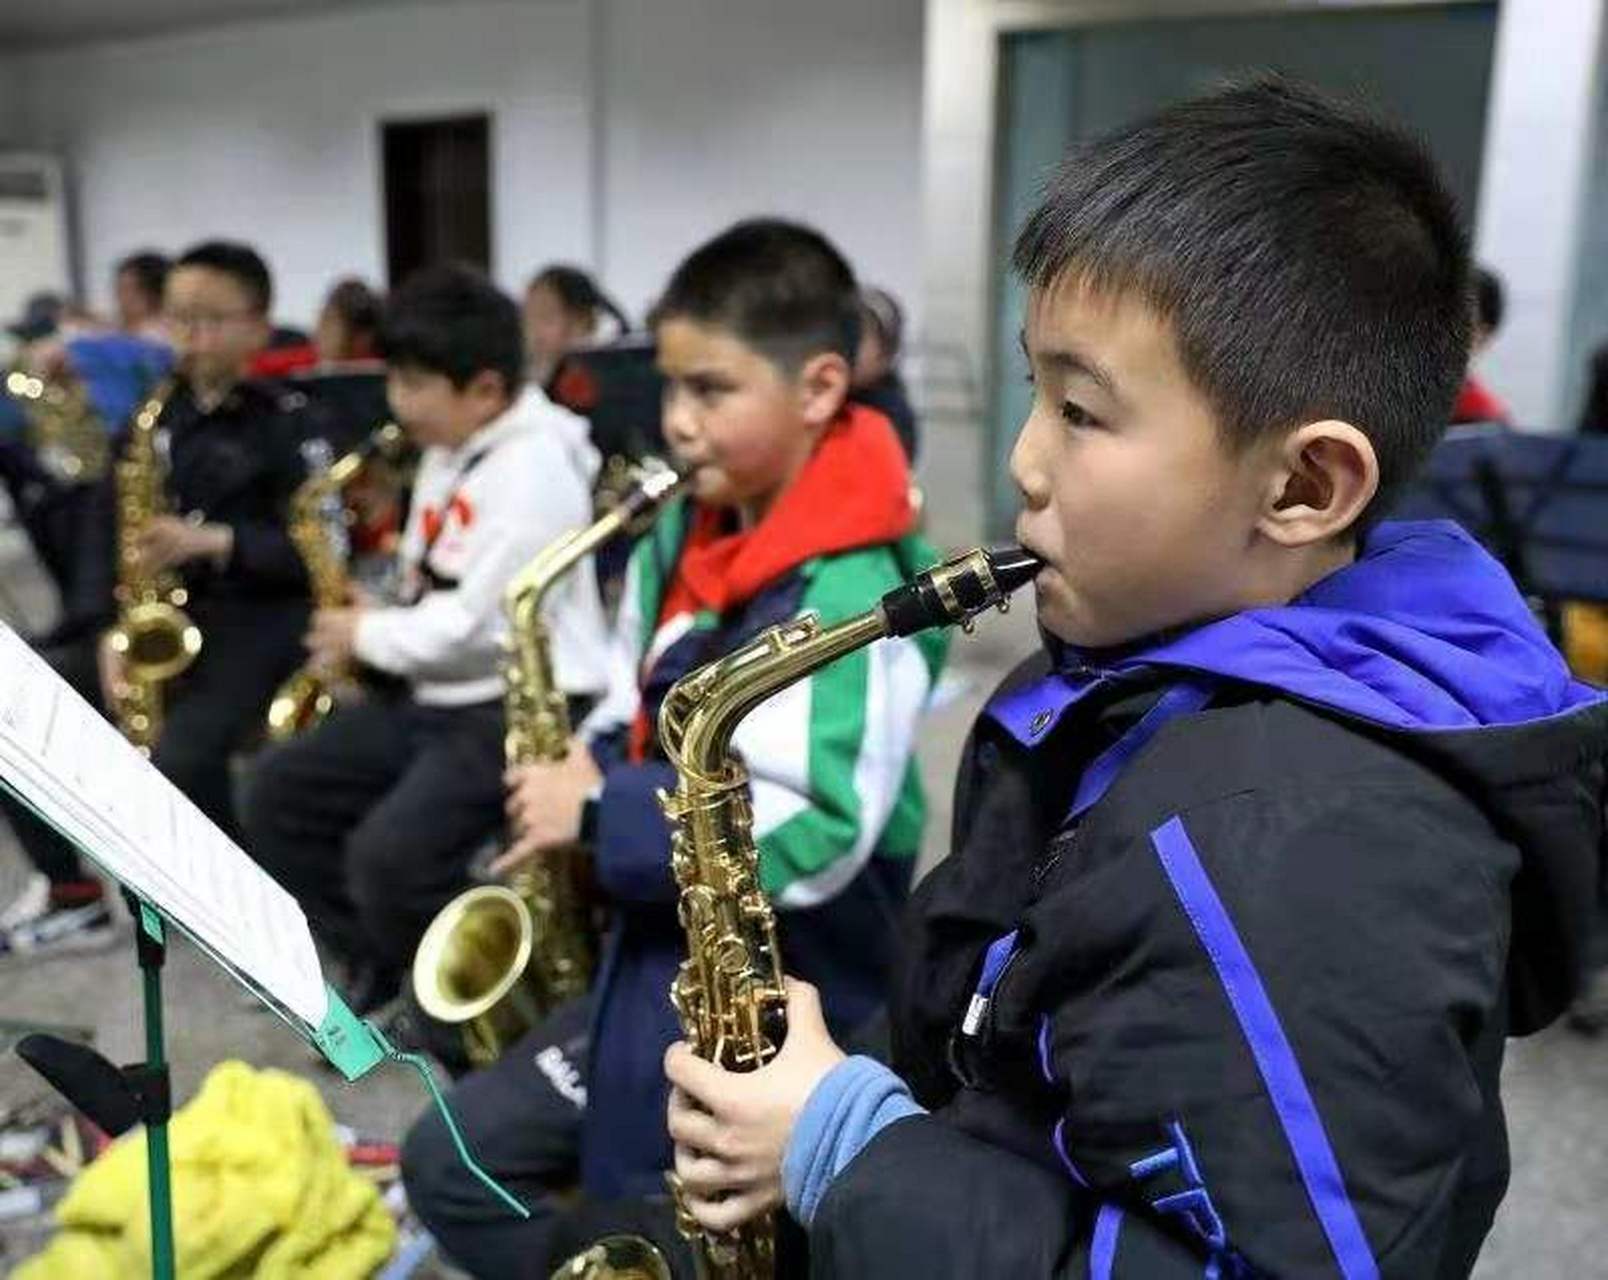 华蓥市双河小学管乐团图片